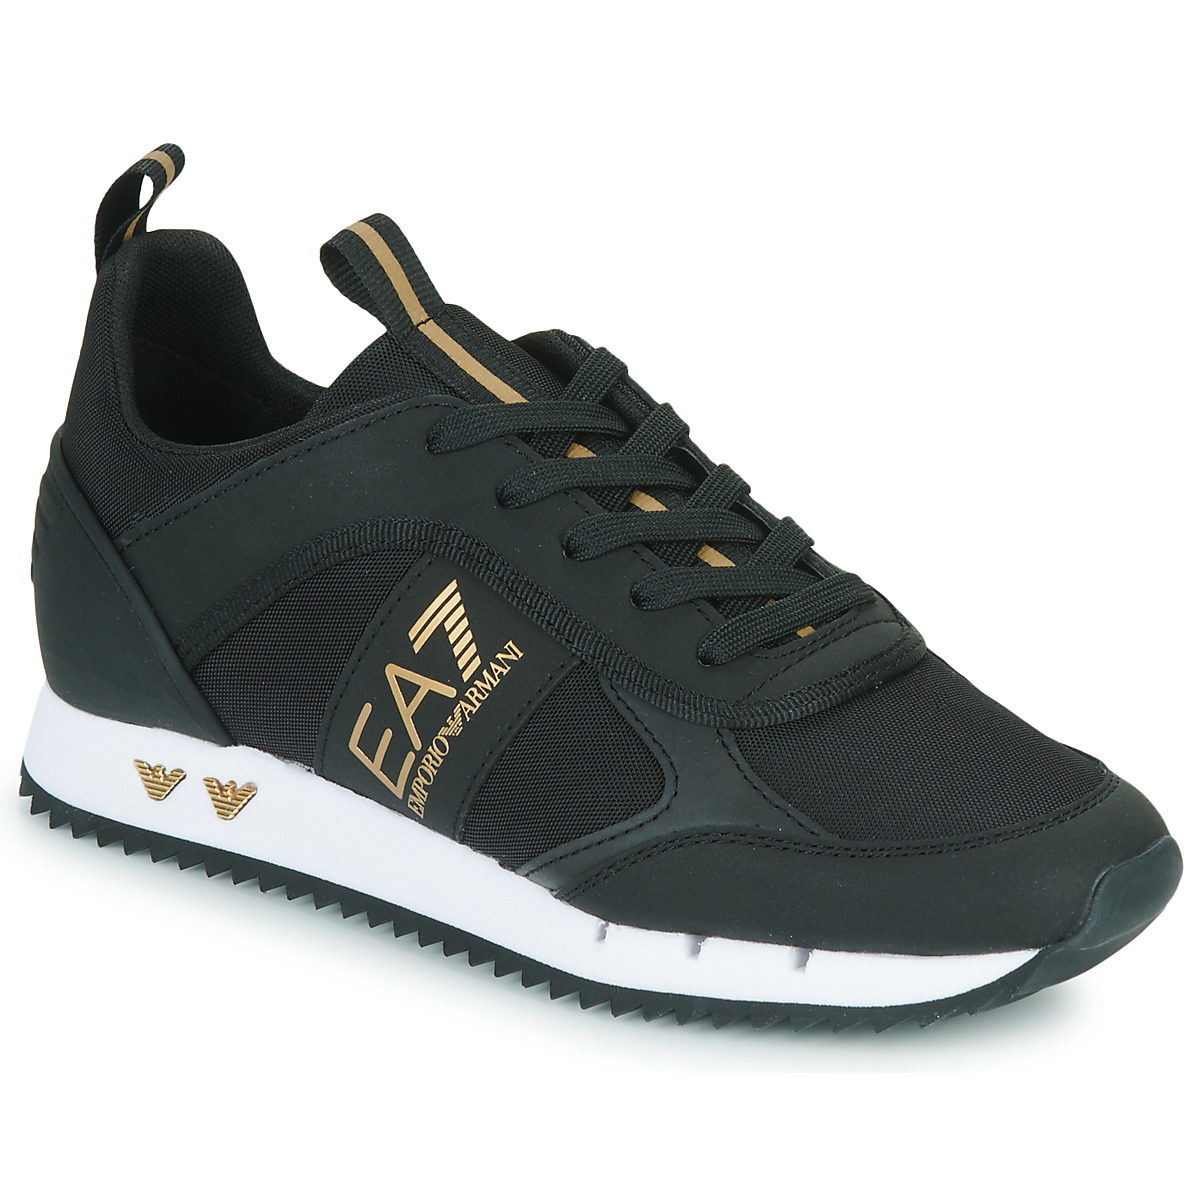 Sapatos Sneakers EMPORIO ARMANI X4X289 XM499 Q829 Black Gunmetal Gold LACES U Preto / Dourado